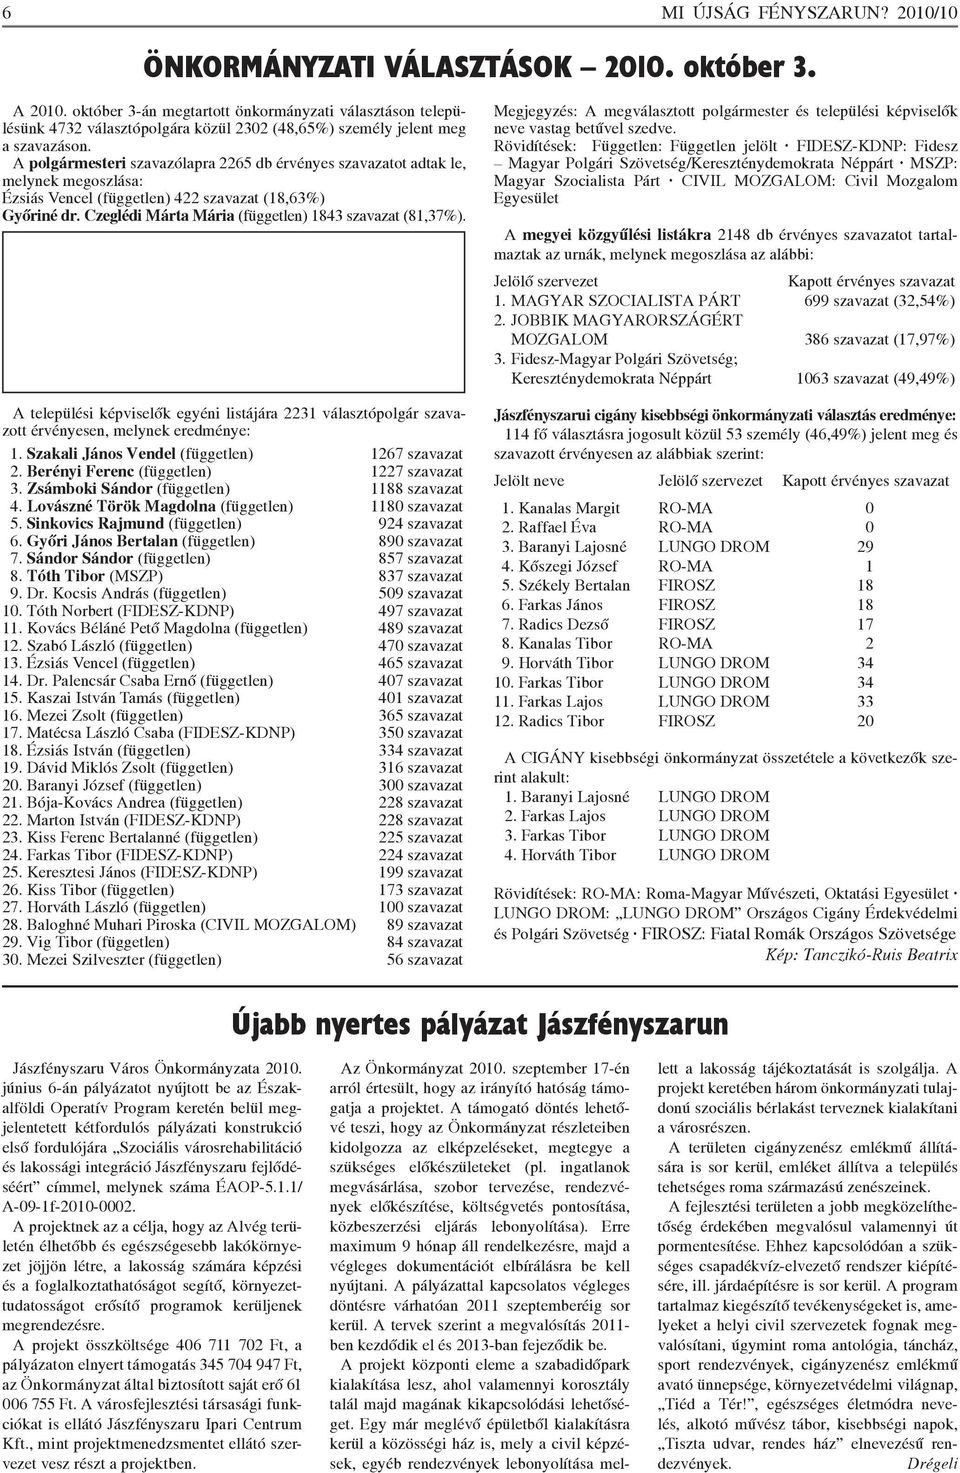 A polgármesteri szavazólapra 2265 db érvényes szavazatot adtak le, melynek megoszlása: Ézsiás Vencel (független) 422 szavazat (18,63%) Győriné dr.